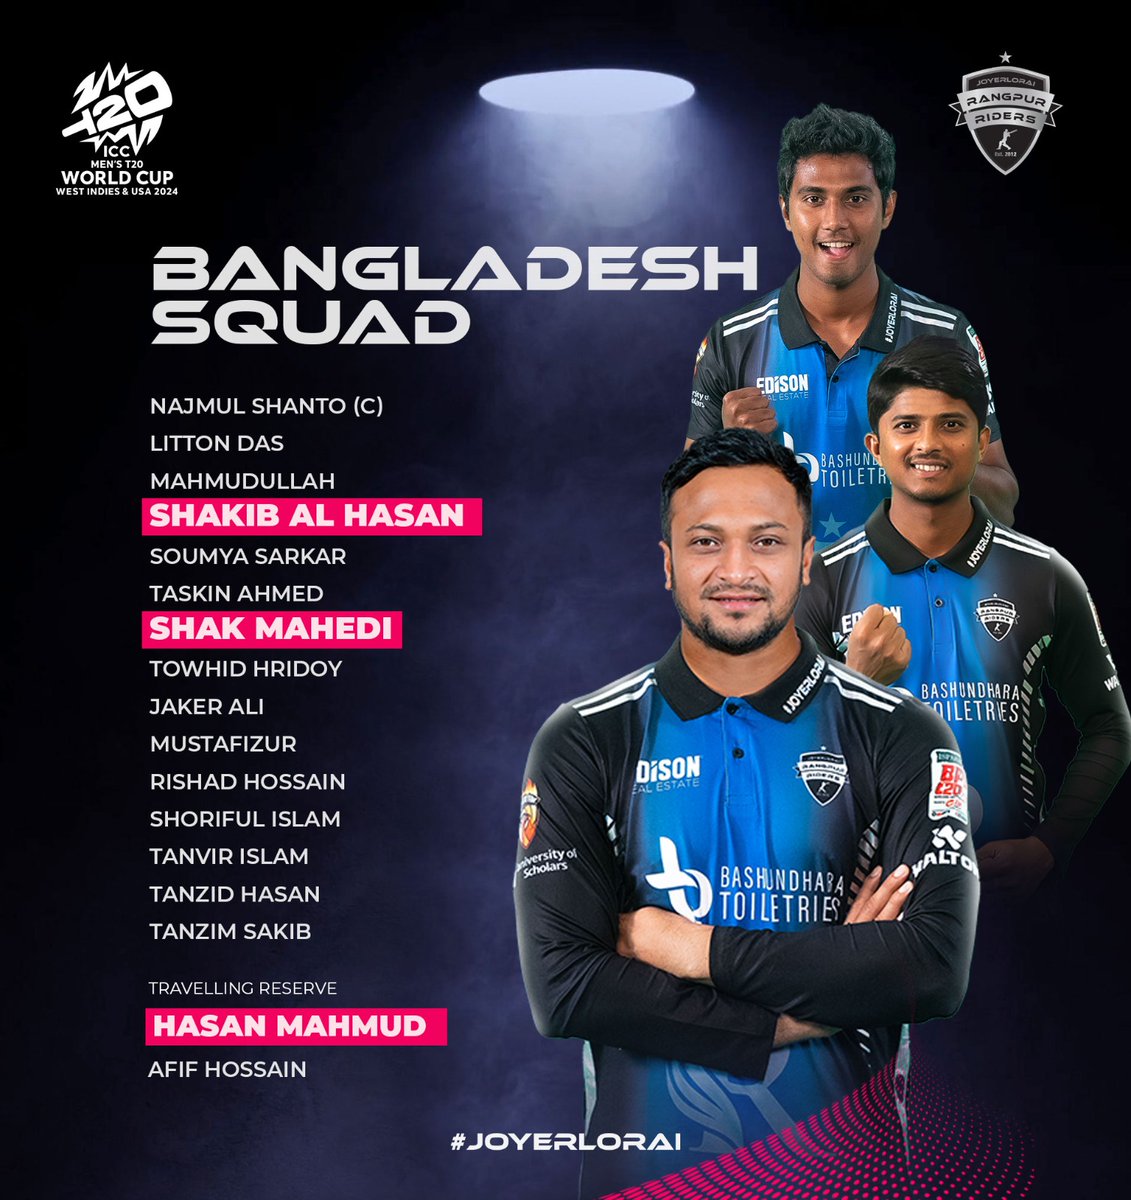 রাইডার সাকিব আল হাসান, মেহেদি হাসান এবং হাসান মাহমুদ (স্ট্যান্ড বাই) লাল-সবুজের প্রতিনিধিত্ব করবেন আসন্ন টি২০ বিশ্বকাপে❗ একনজরে দেখে নিন 🇧🇩 এর পুরো স্কোয়াড আর কমেন্টে জানান আপনার ভাবনা: 

#Joyerlorai #rangpurriders #TWC24 #bangladesh #bangladeshcricket